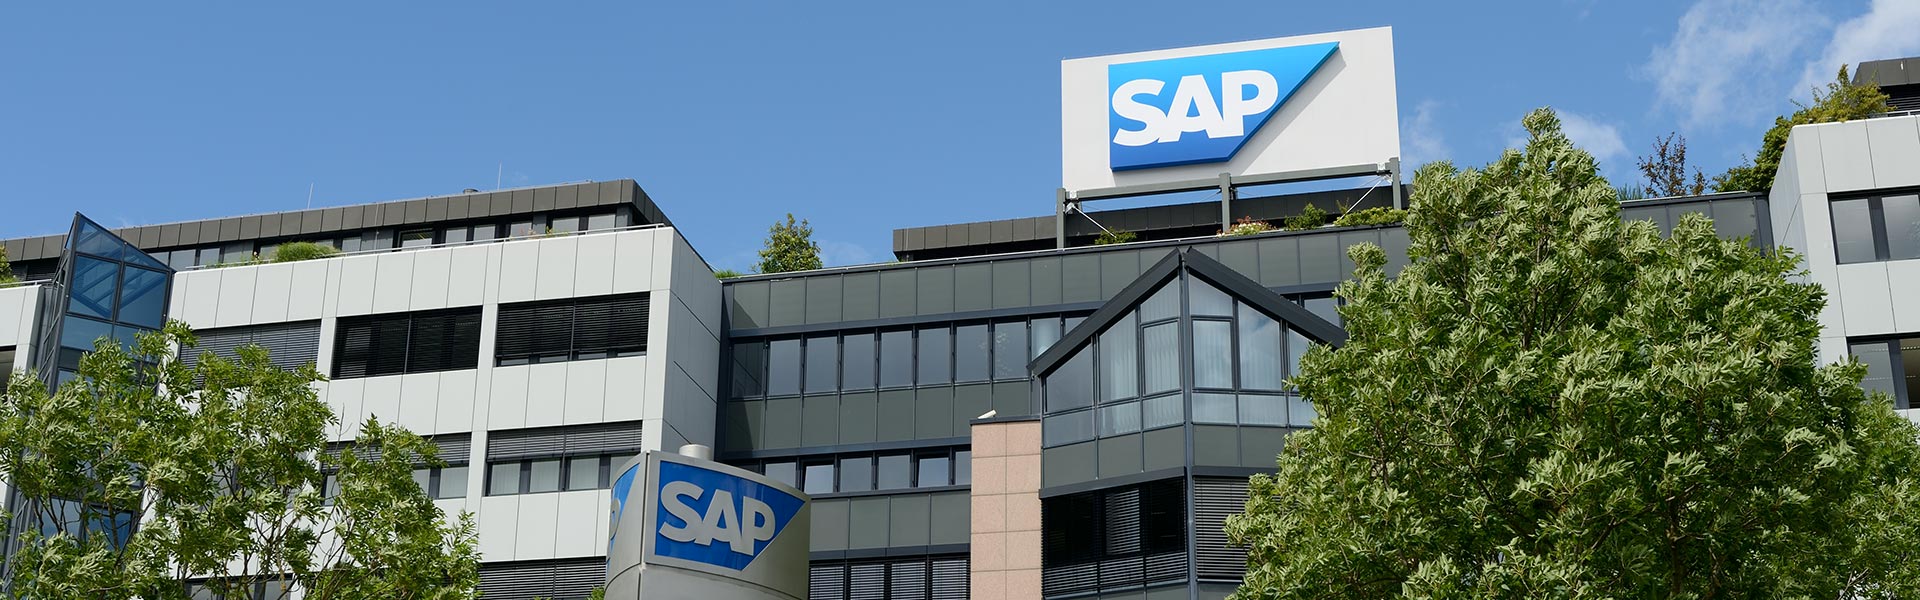 SAP to Acquire Crossgate